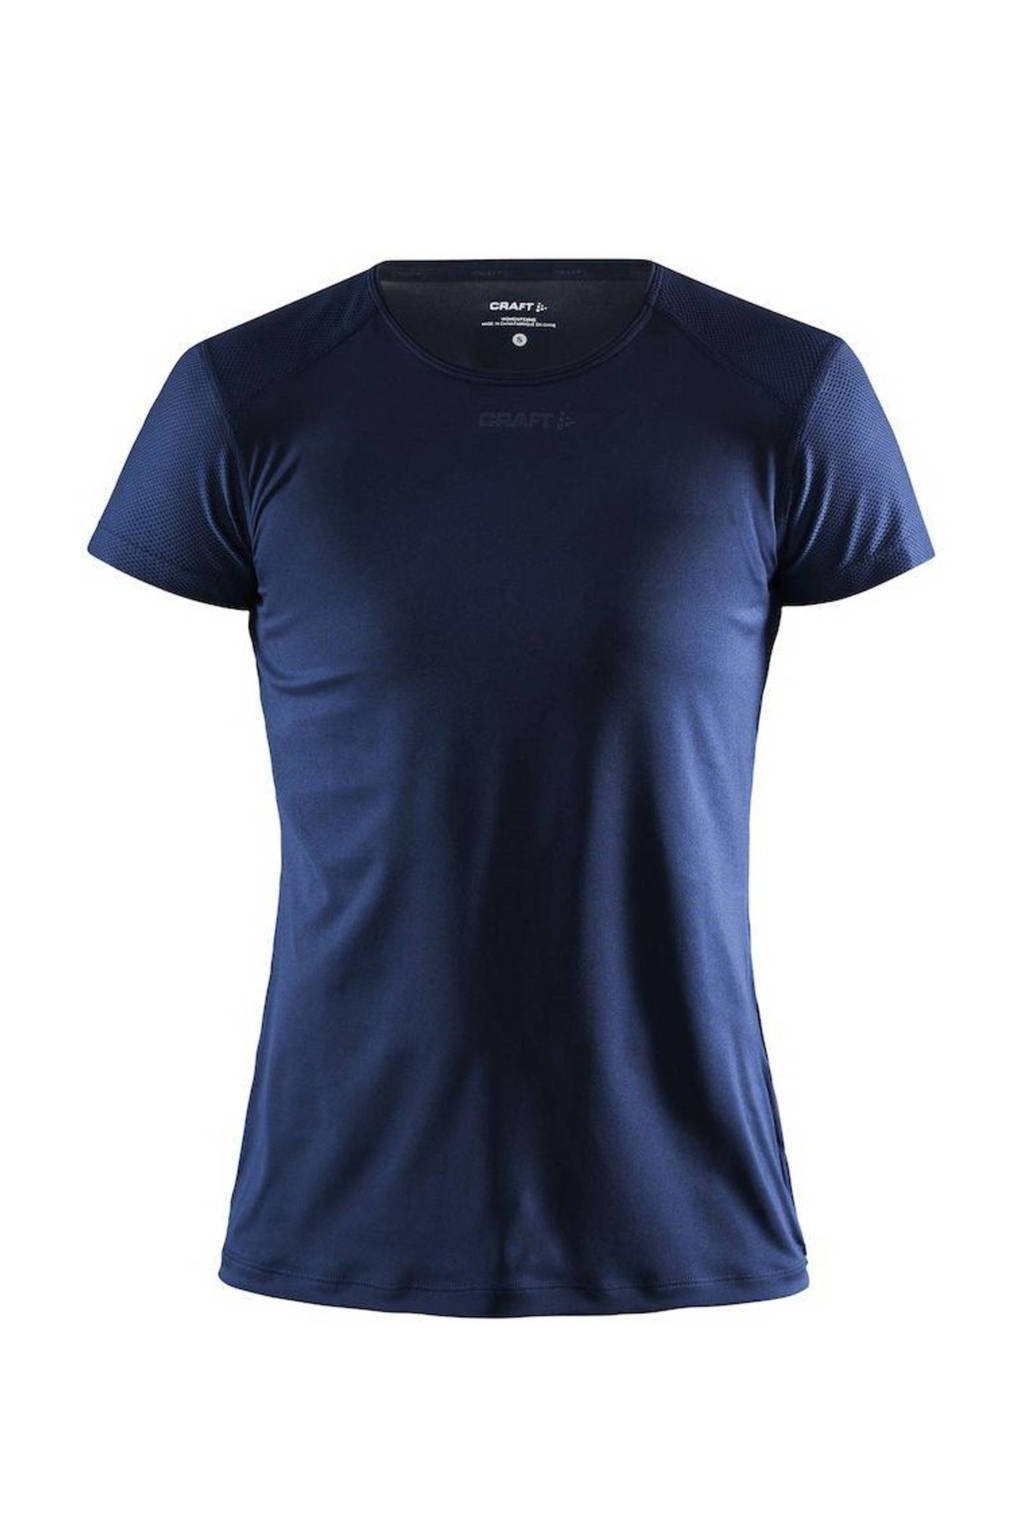 Blauwe dames Craft sport T-shirt Essence van gerecycled polyester met korte mouwen, ronde hals en mesh